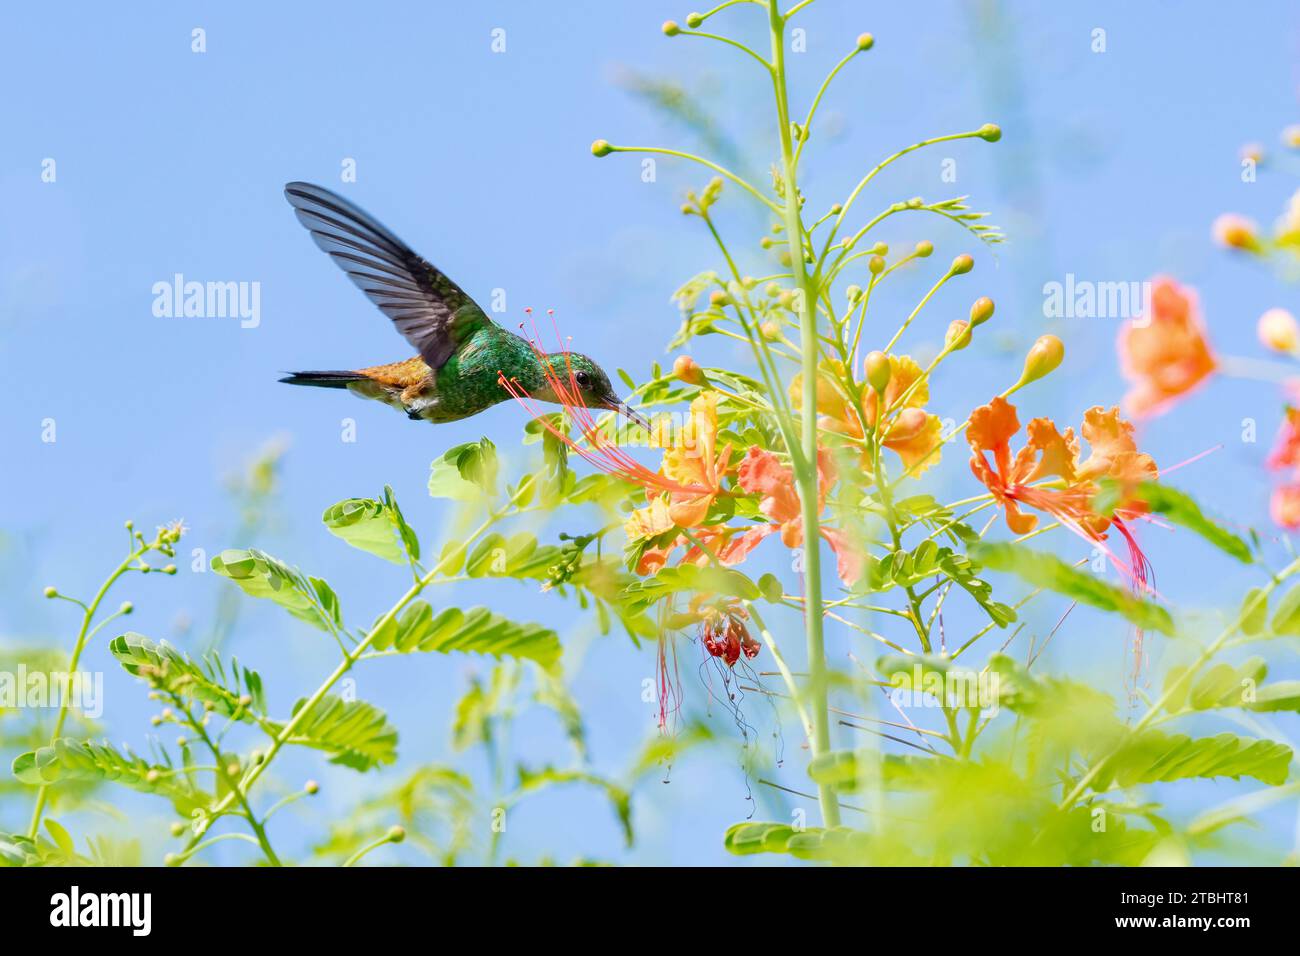 Ein Kolibri mit Kupferklumpen, Amazilia-Tabak, bestäubende Blumen am blauen Himmel an einem sonnigen Tag Stockfoto